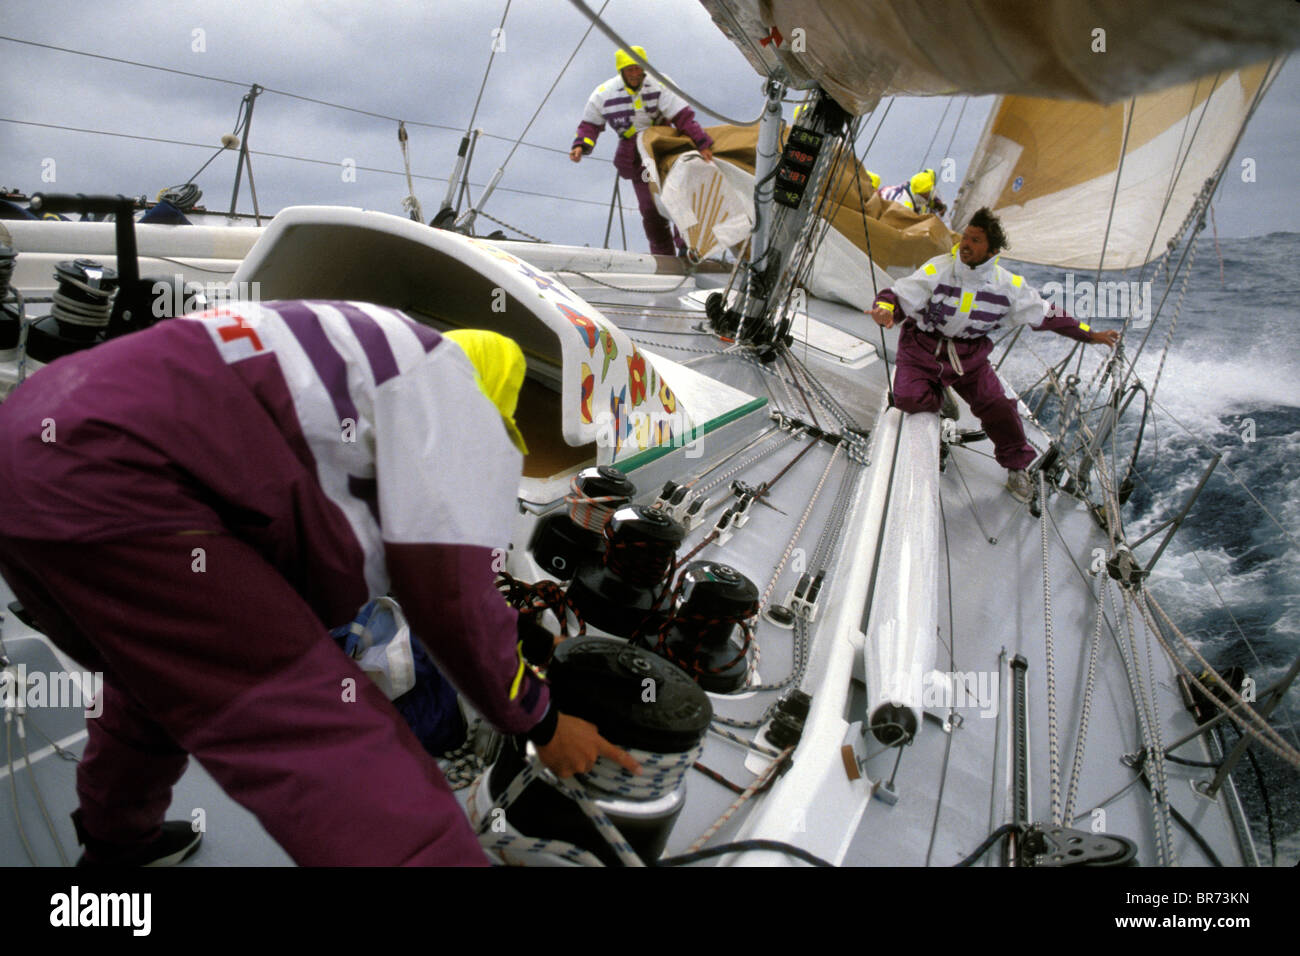 Cambiamento di vela a bordo di 'Carta' durante la Whitbread Round the World Race, 1989-90. Foto Stock